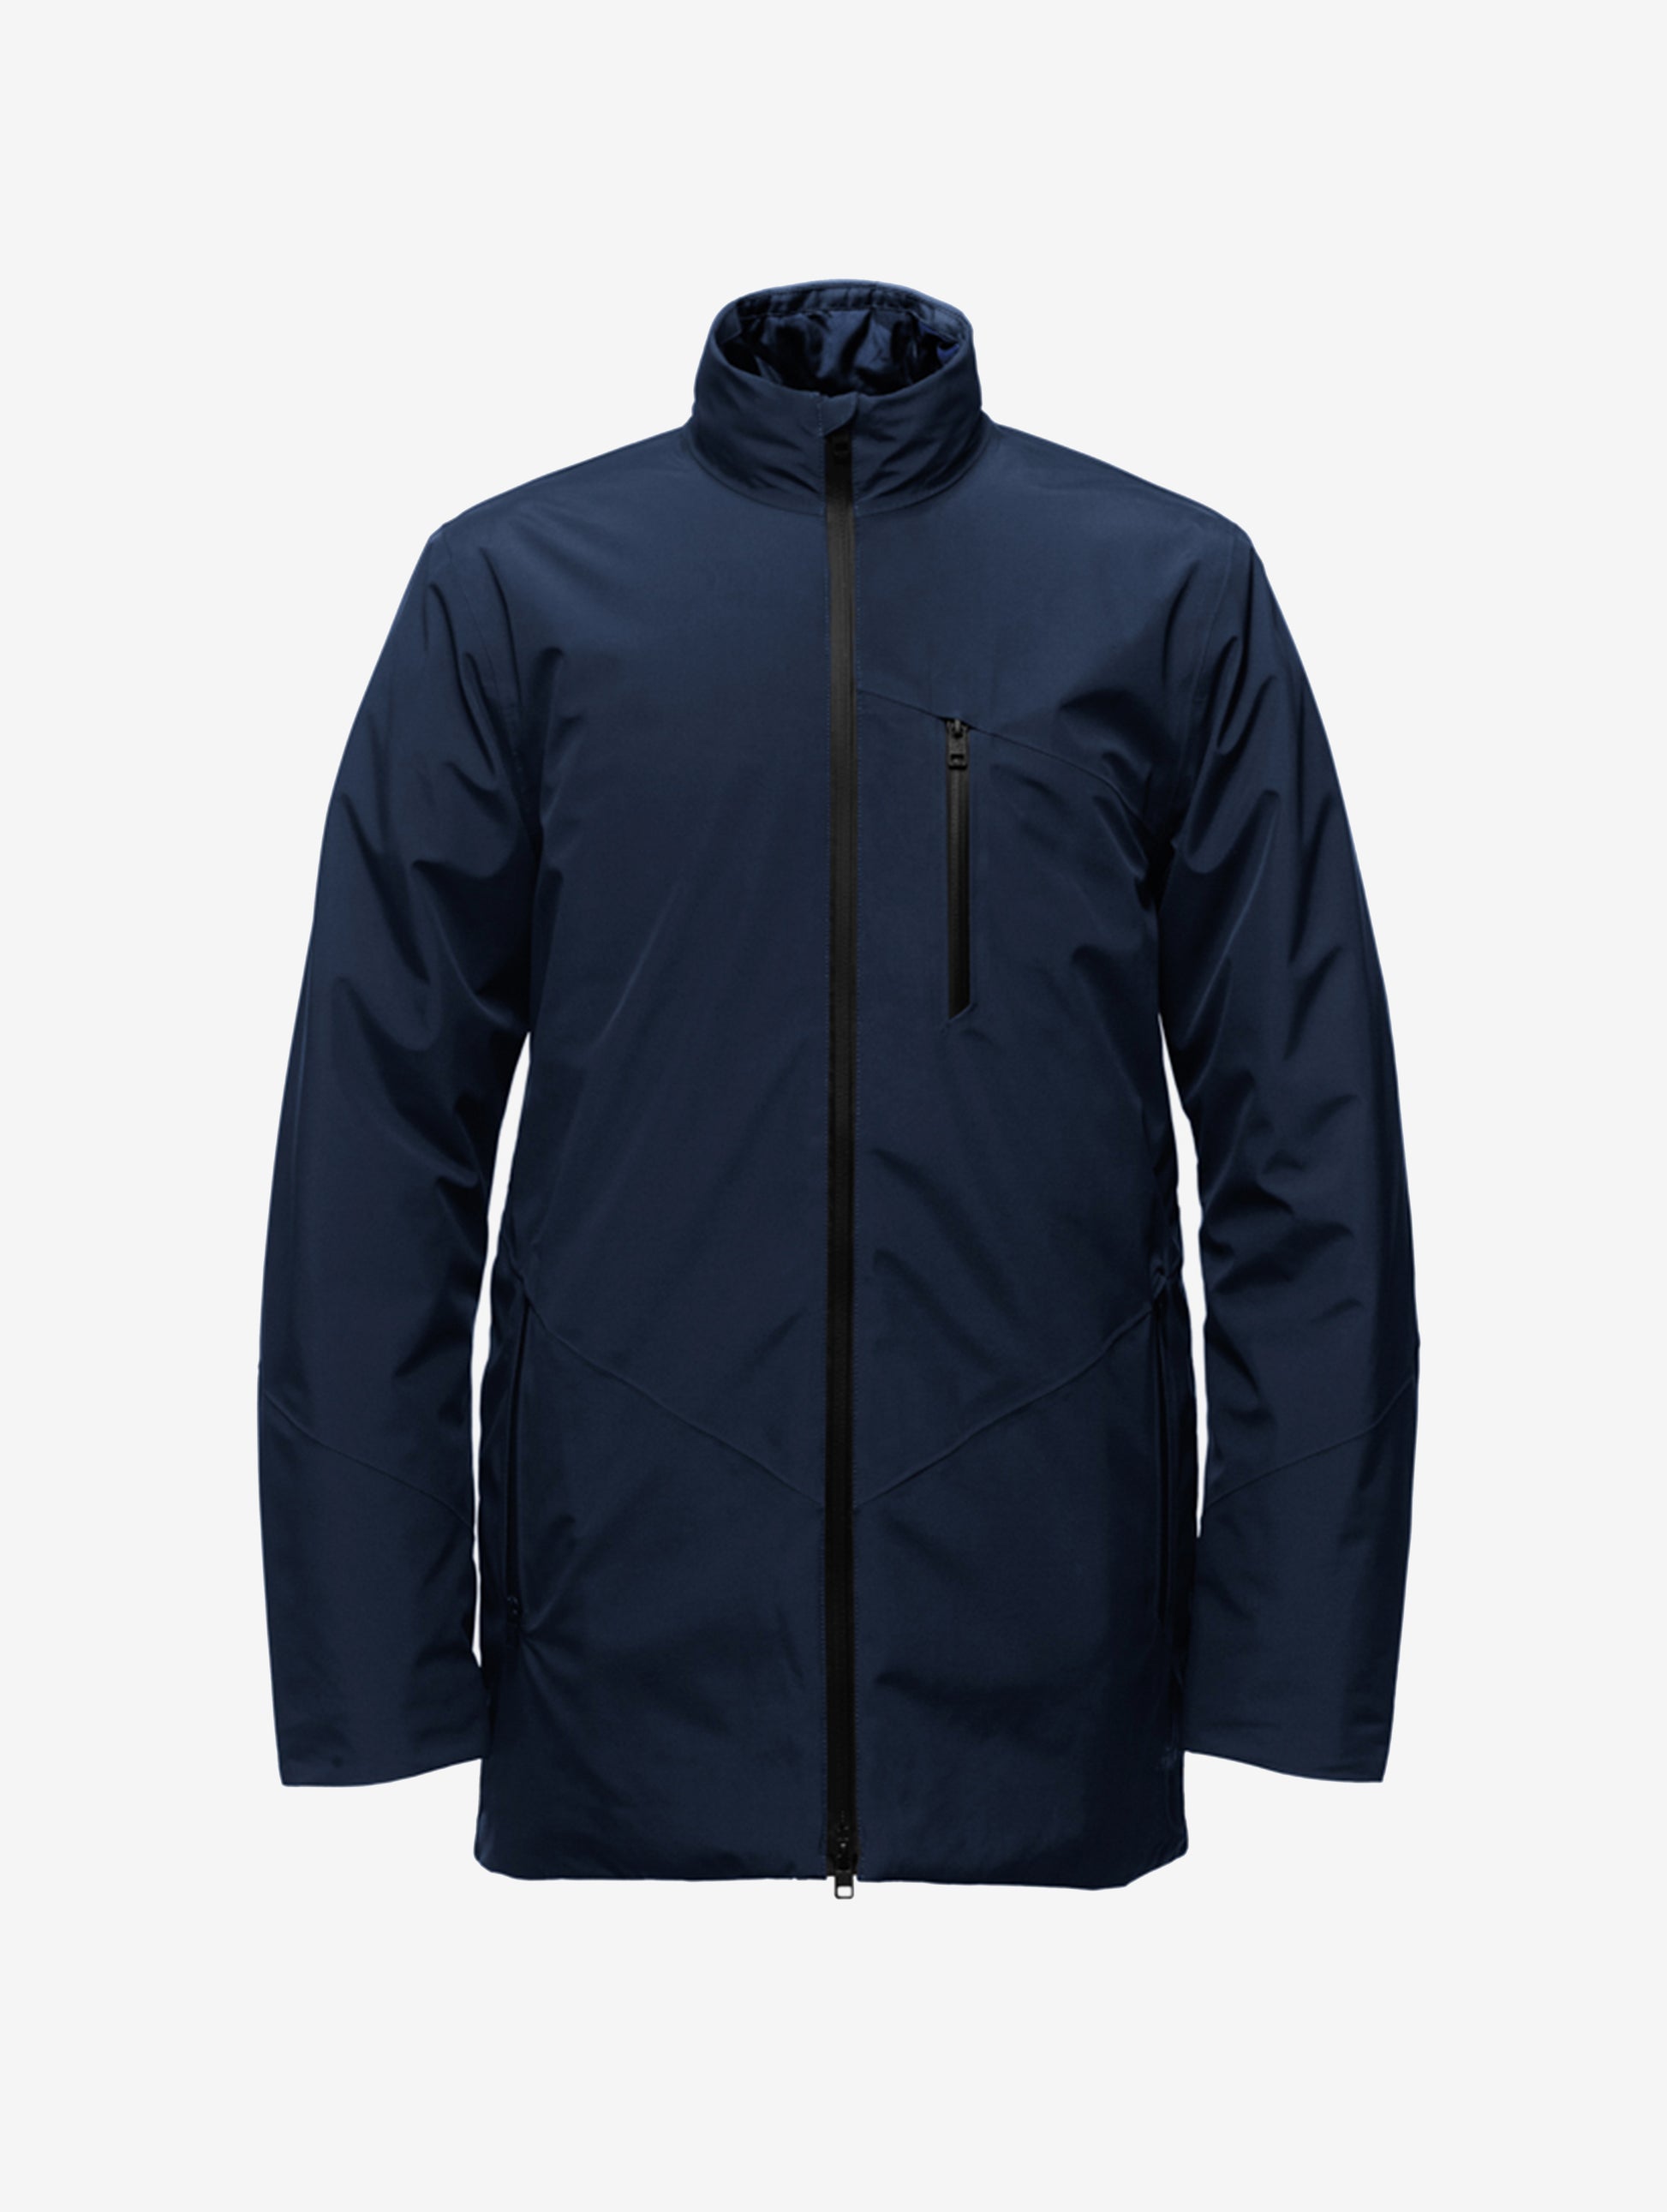 Product photo of blue jacket